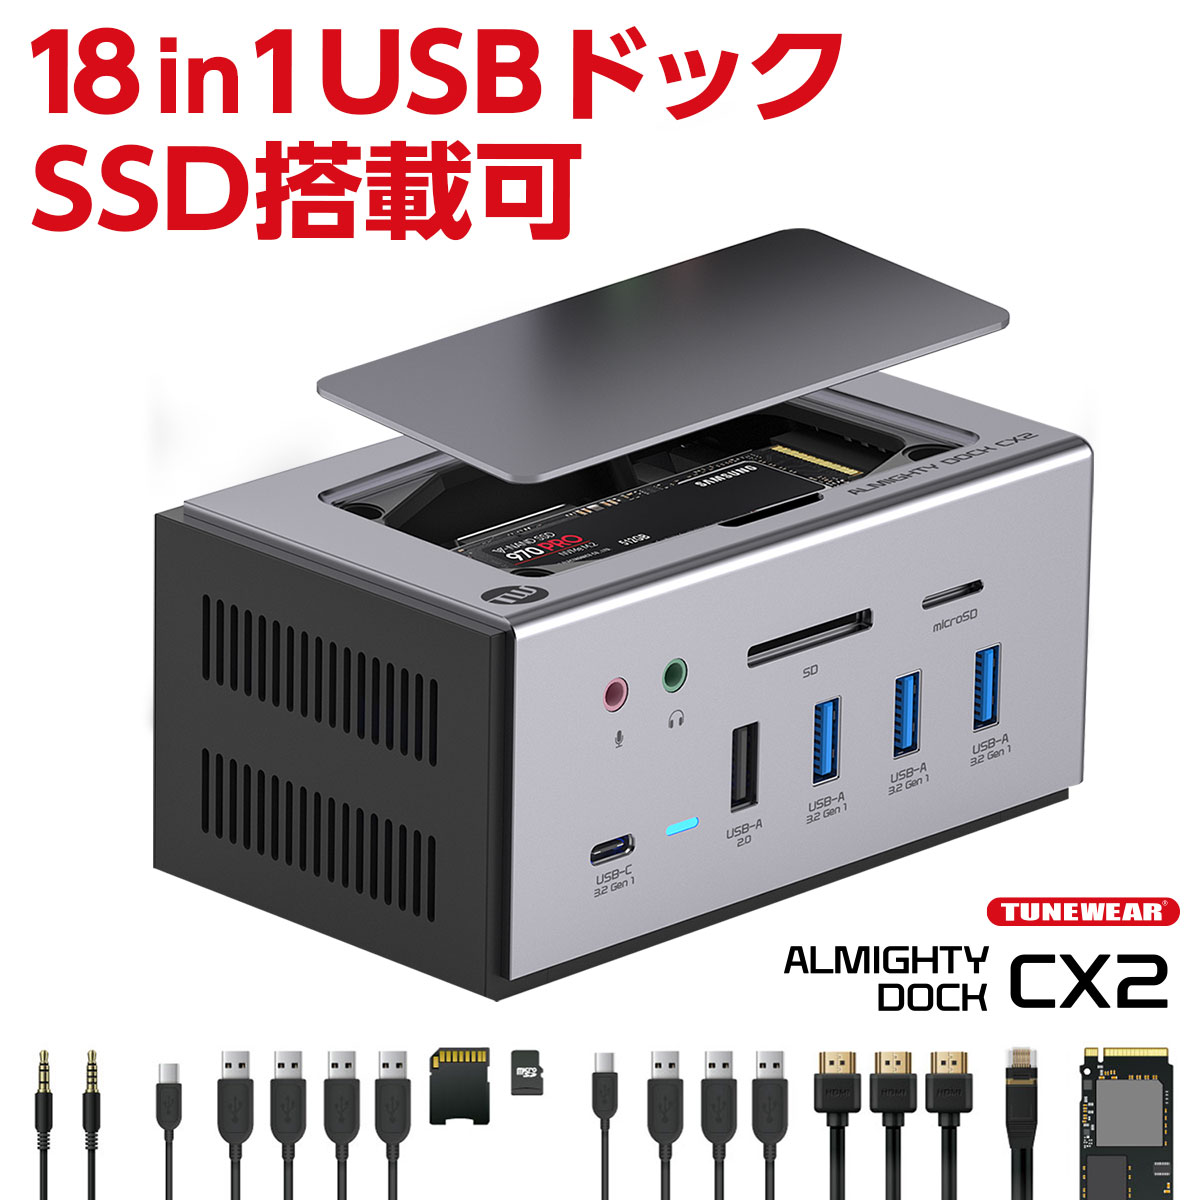 TUNEWEAR ALMIGHTY DOCK CX2 18-in-1 USBハブ 最大3画面増設可能 SSD